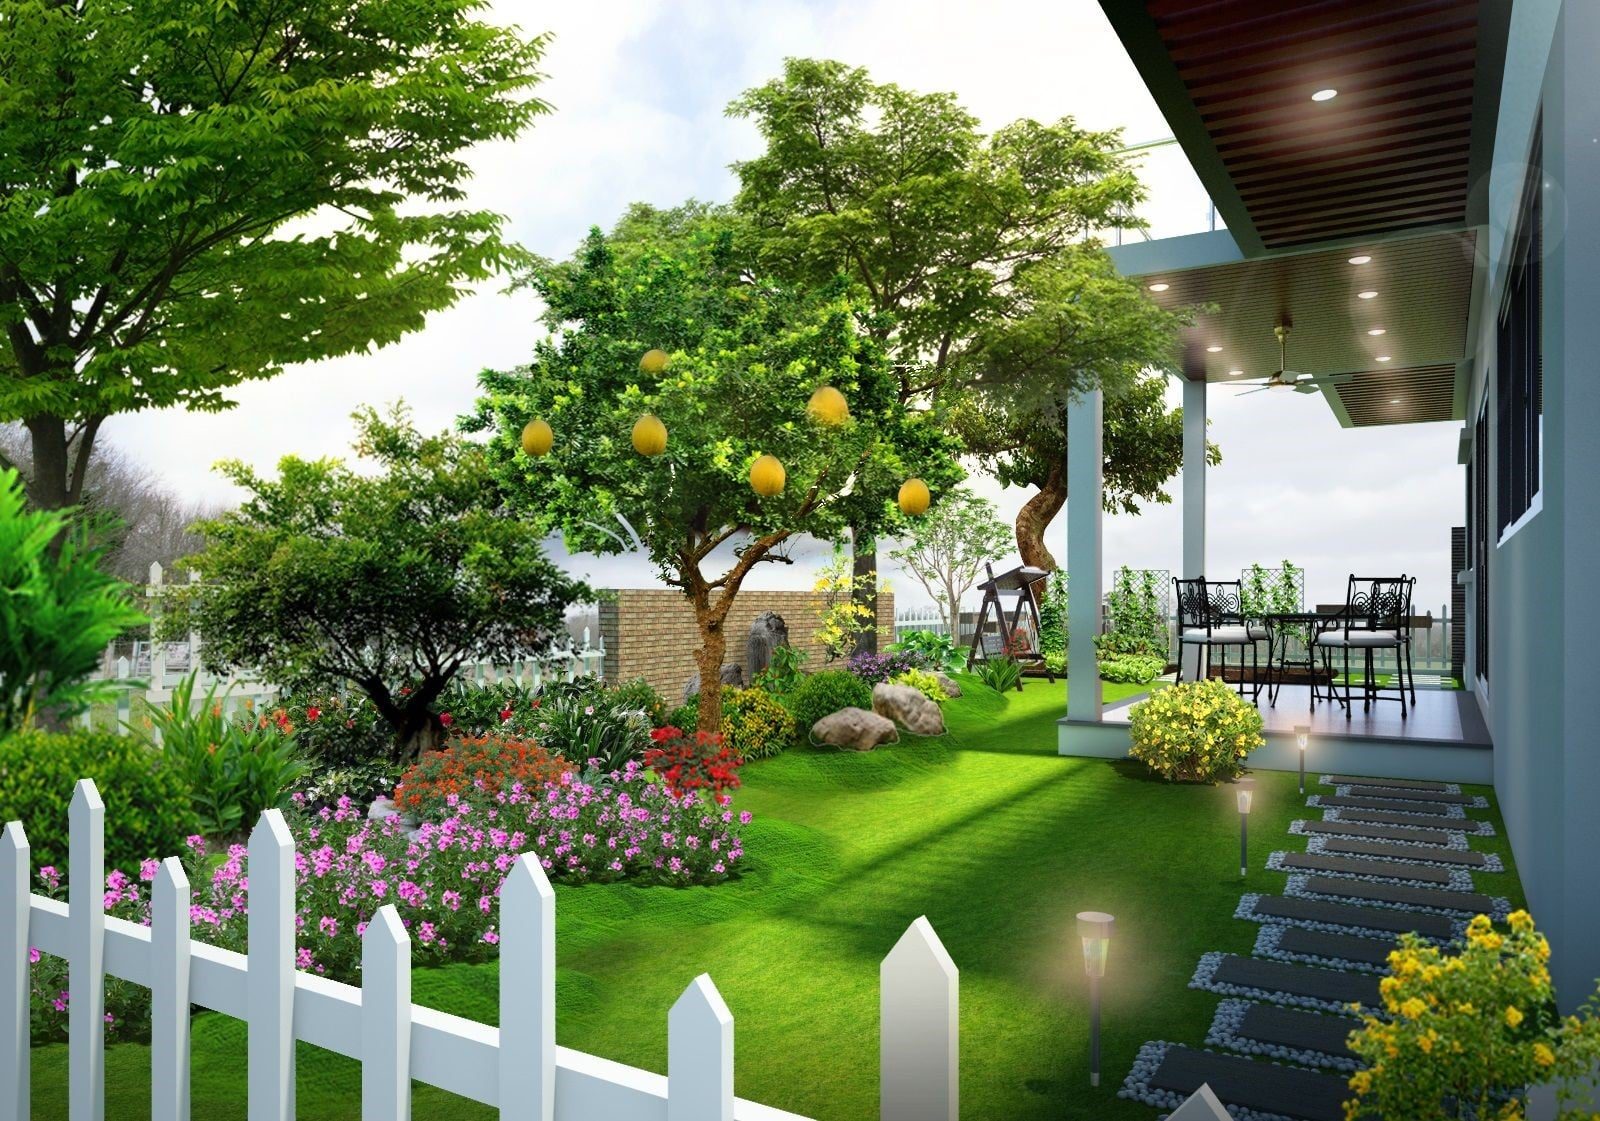 Top 9 mẫu sân vườn đẹp khiến người nhìn say đắm| Datsaithanh.vn